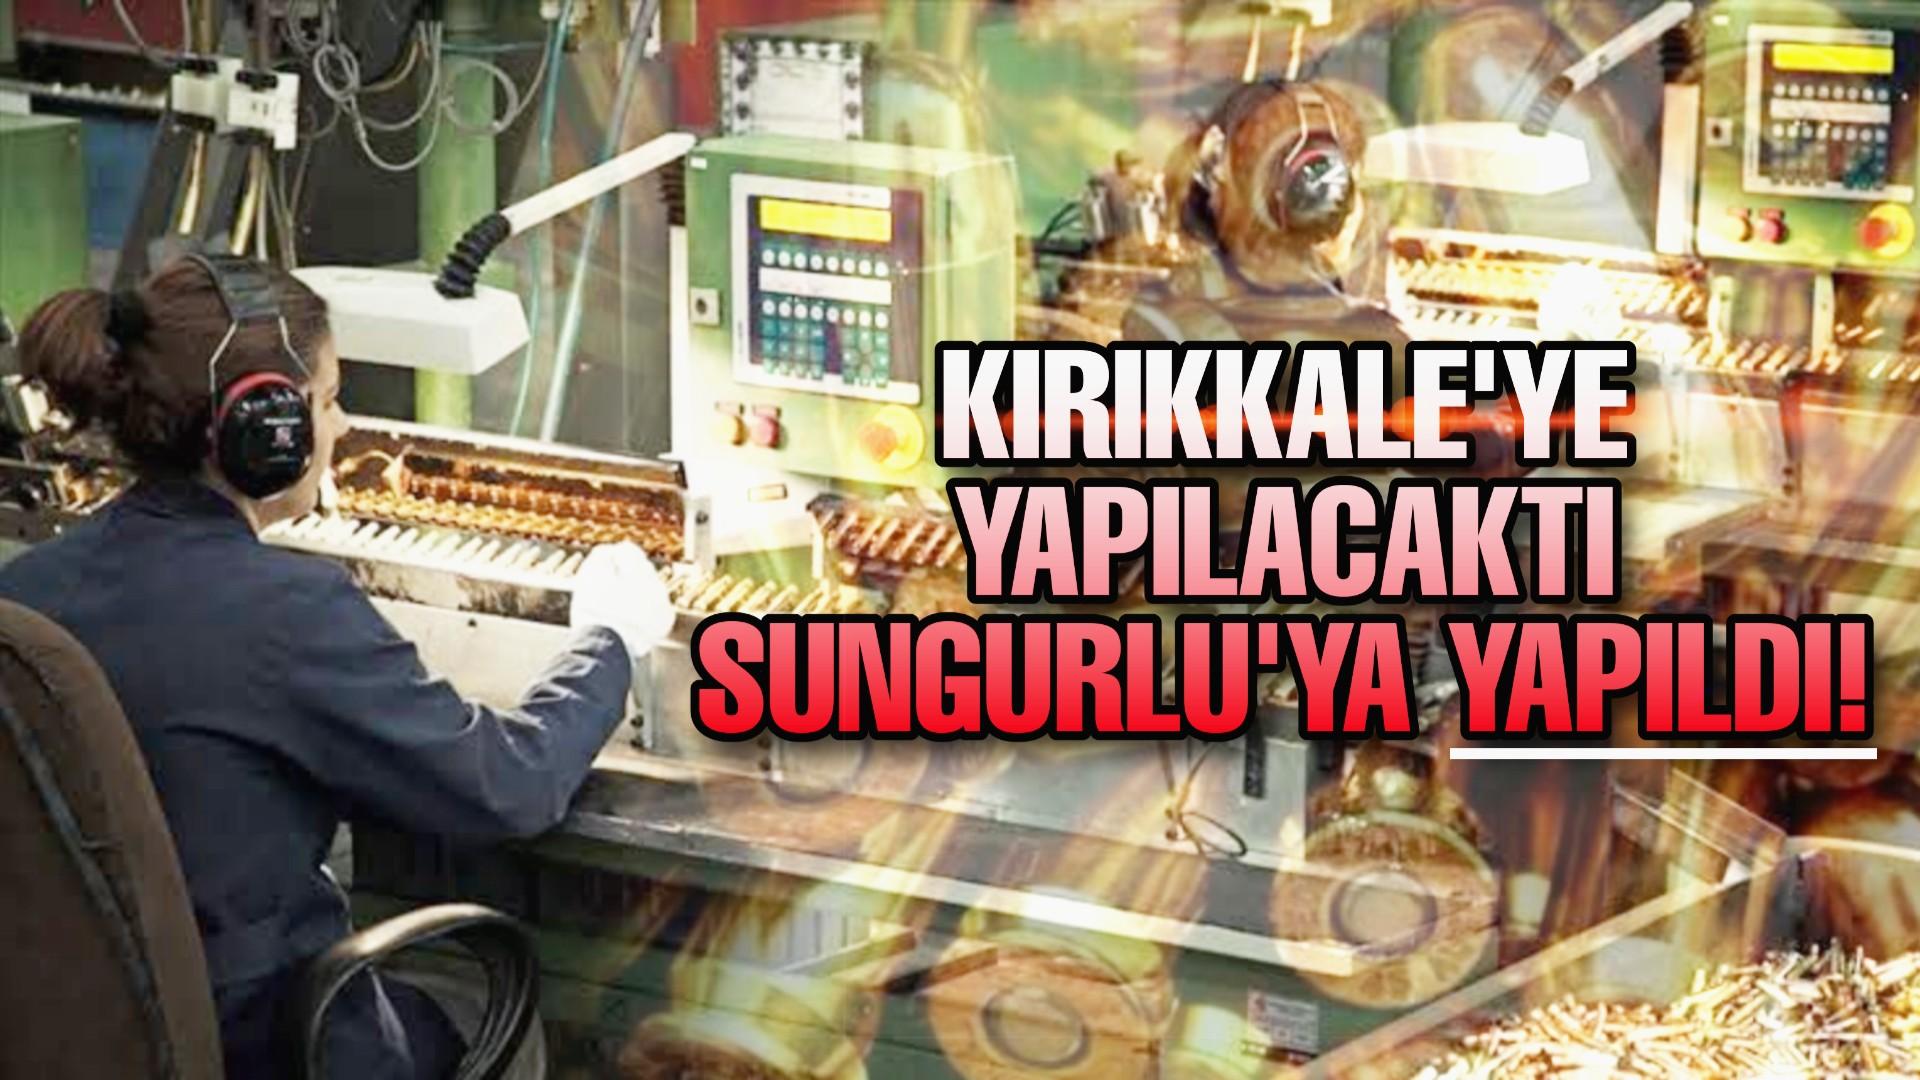 Kırıkkale'ye yapılacaktı Sungurlu'ya yapıldı!